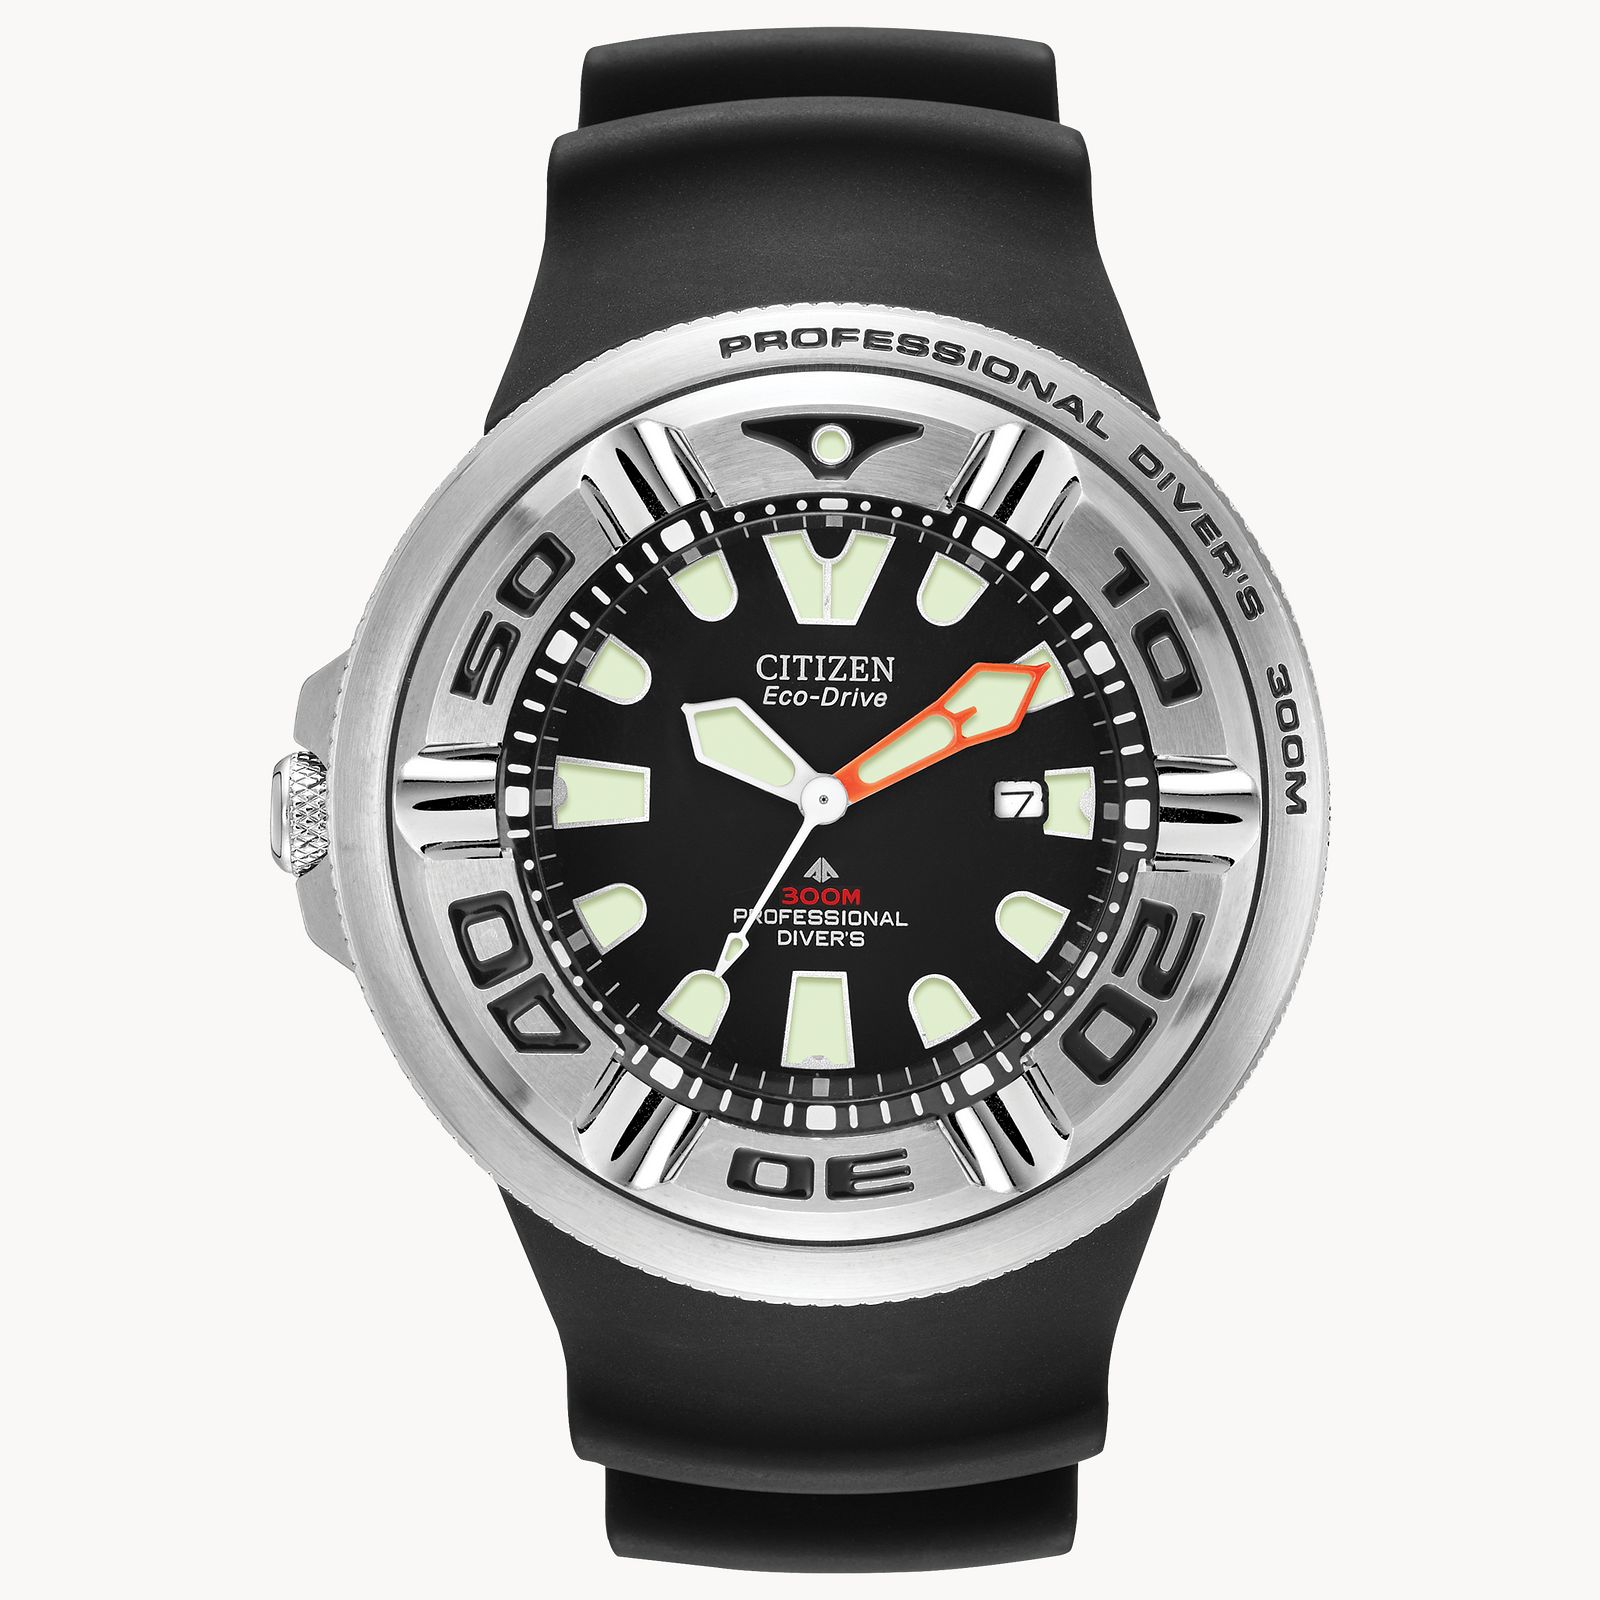 BJ8050-08E citizen promaster mens professional dive watch